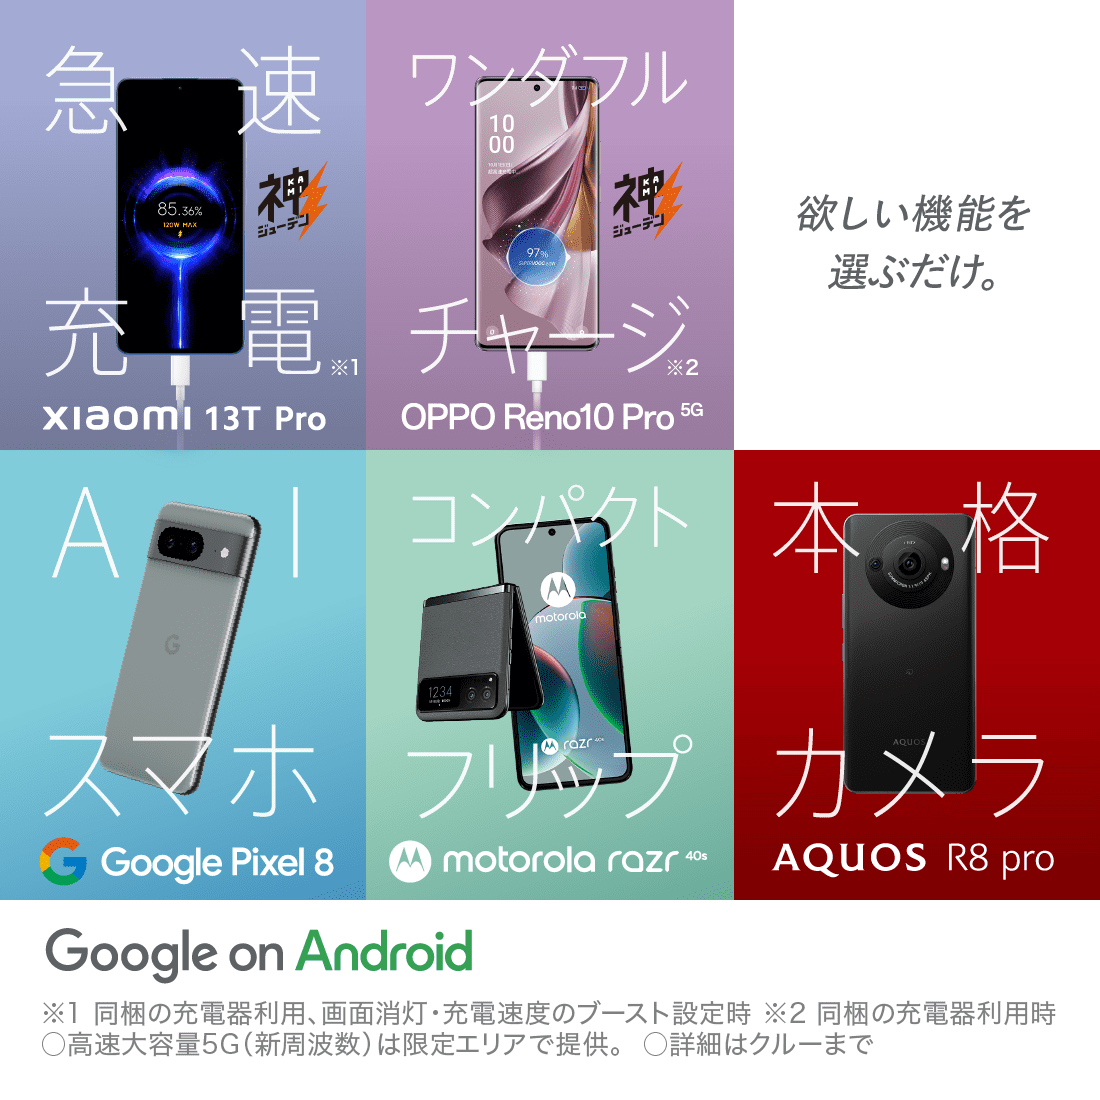 急速充電 Xiaomi 13T Pro ワンダフルチャージ OPPO Reno10 Pro 5G 欲しい機能を選ぶだけ。 AIスマホ Google Pixel 8 コンパクトフリップ motorola razr 40s 本格カメラ AQUOS R8 pro Google on Android